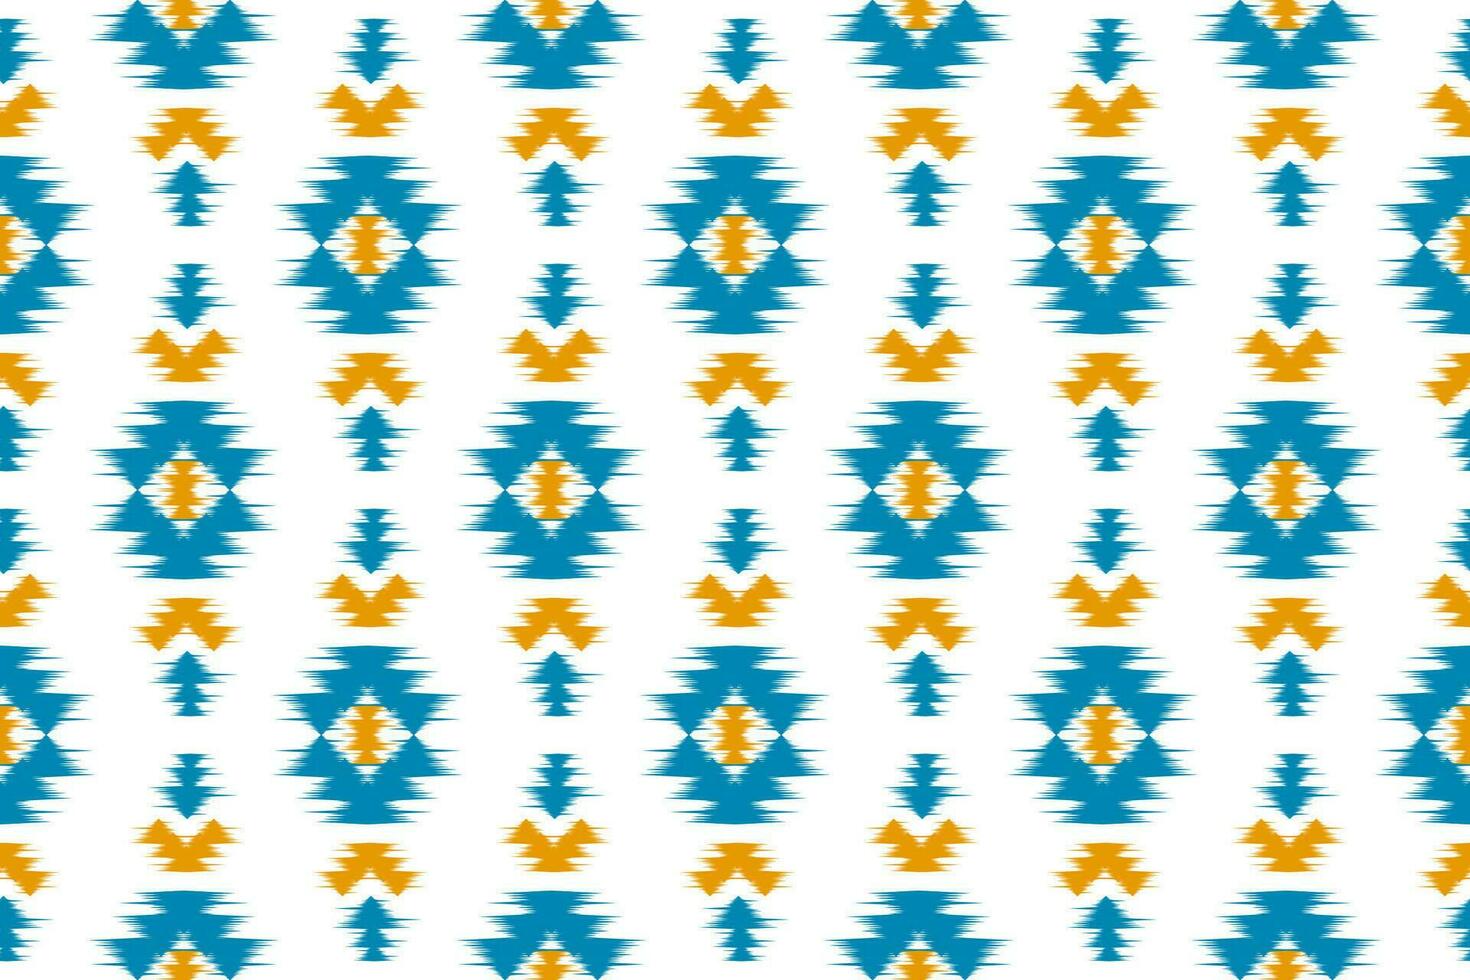 patrón de tela ikat art. patrón geométrico étnico sin fisuras tradicional. estilo americano, mexicano. vector